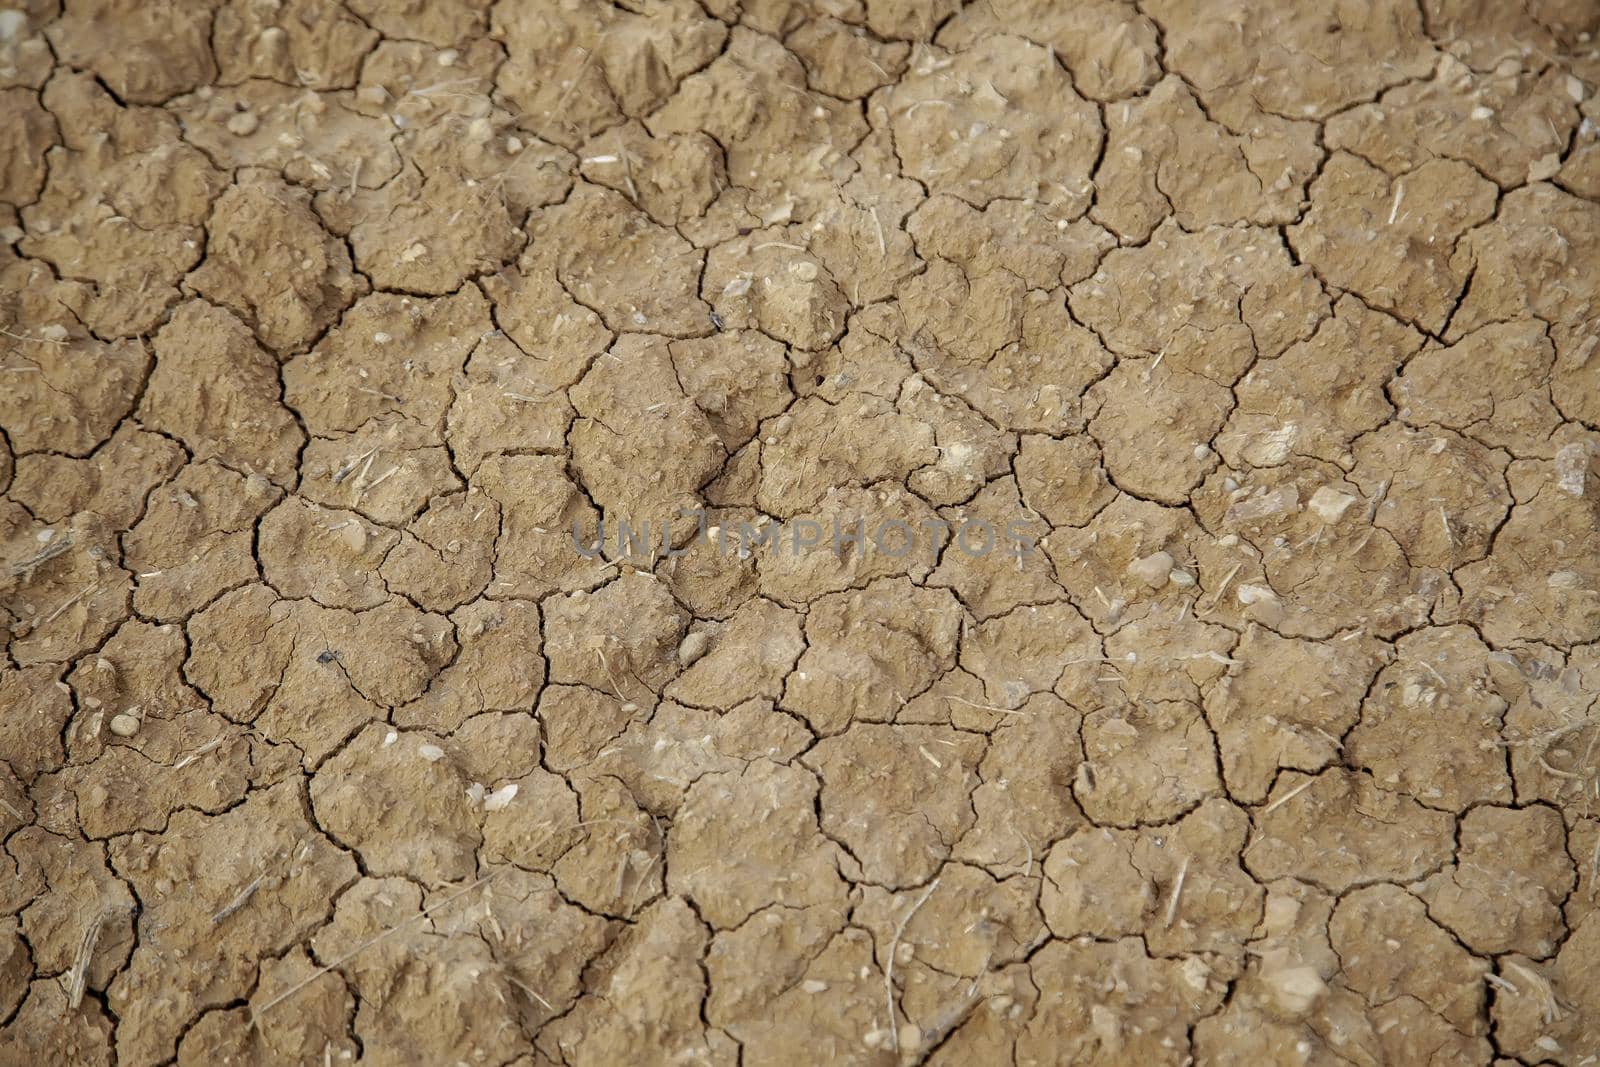 Dry soil in nature by esebene